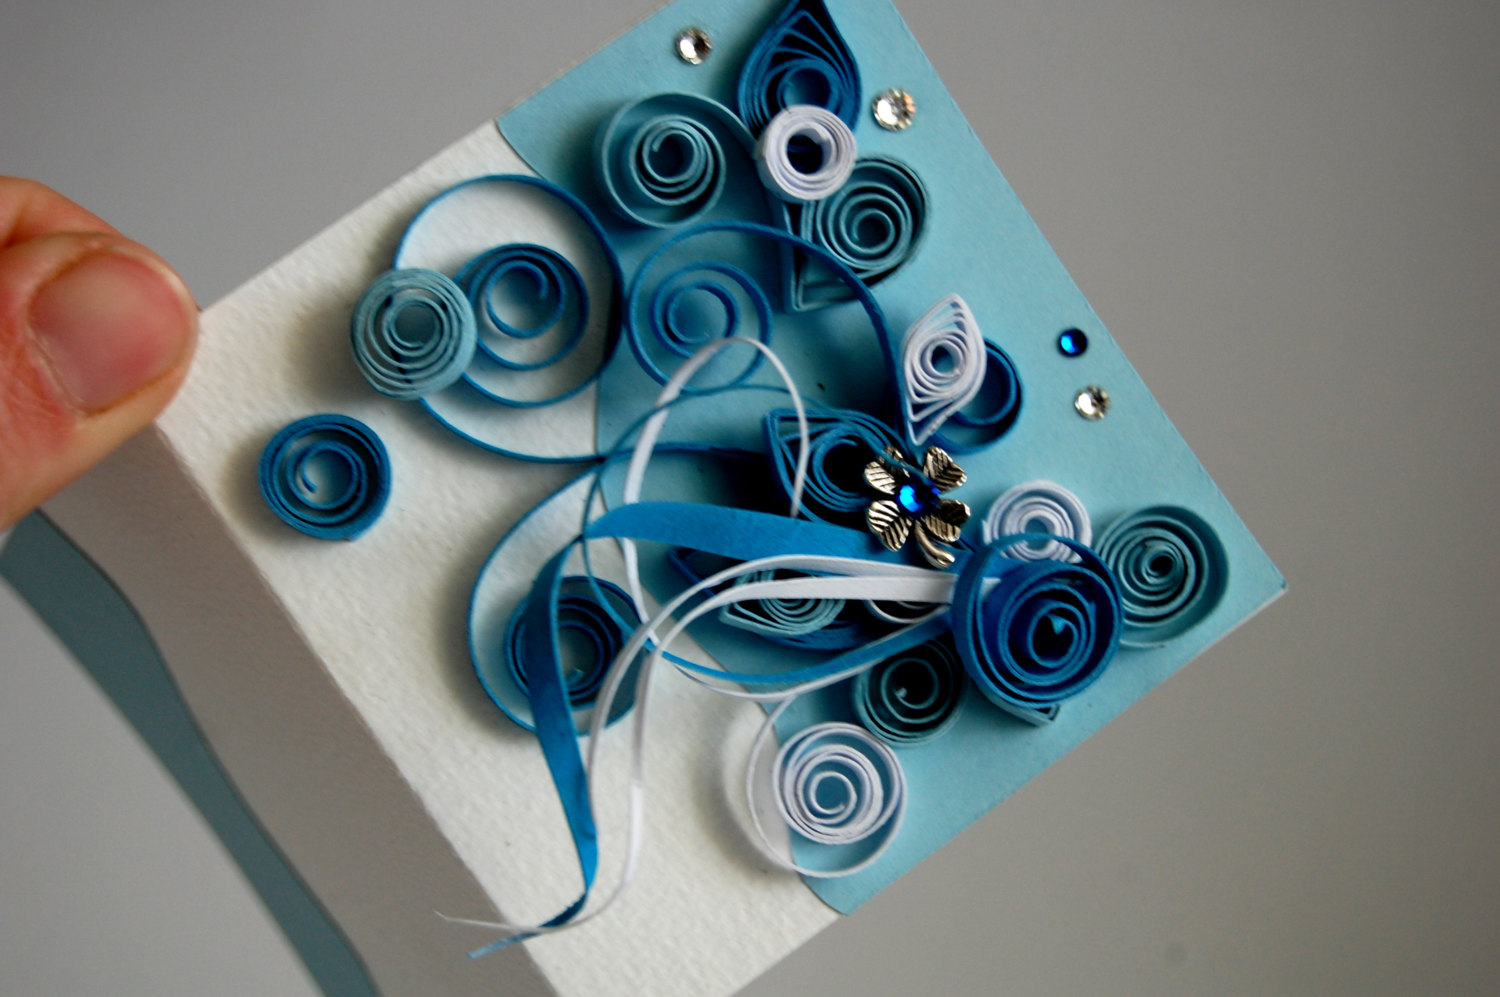 Creative Handmade Birthday Card Ideas Easy Diy Birthday Cards Ideas And Designs